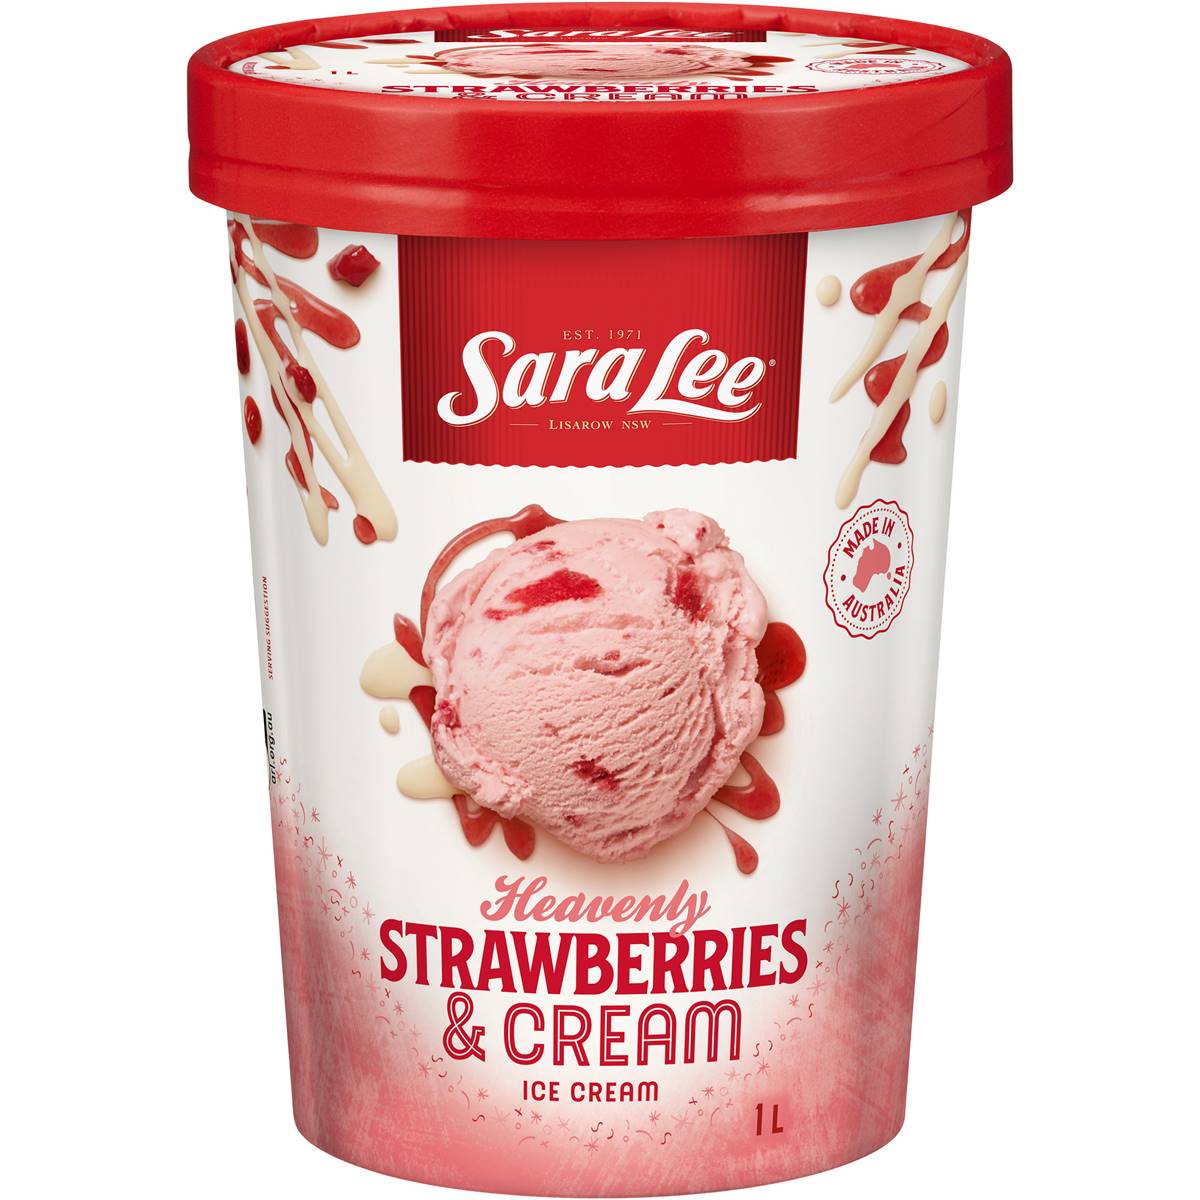 Calories in Sara Lee Strawberries & Cream Ice Cream